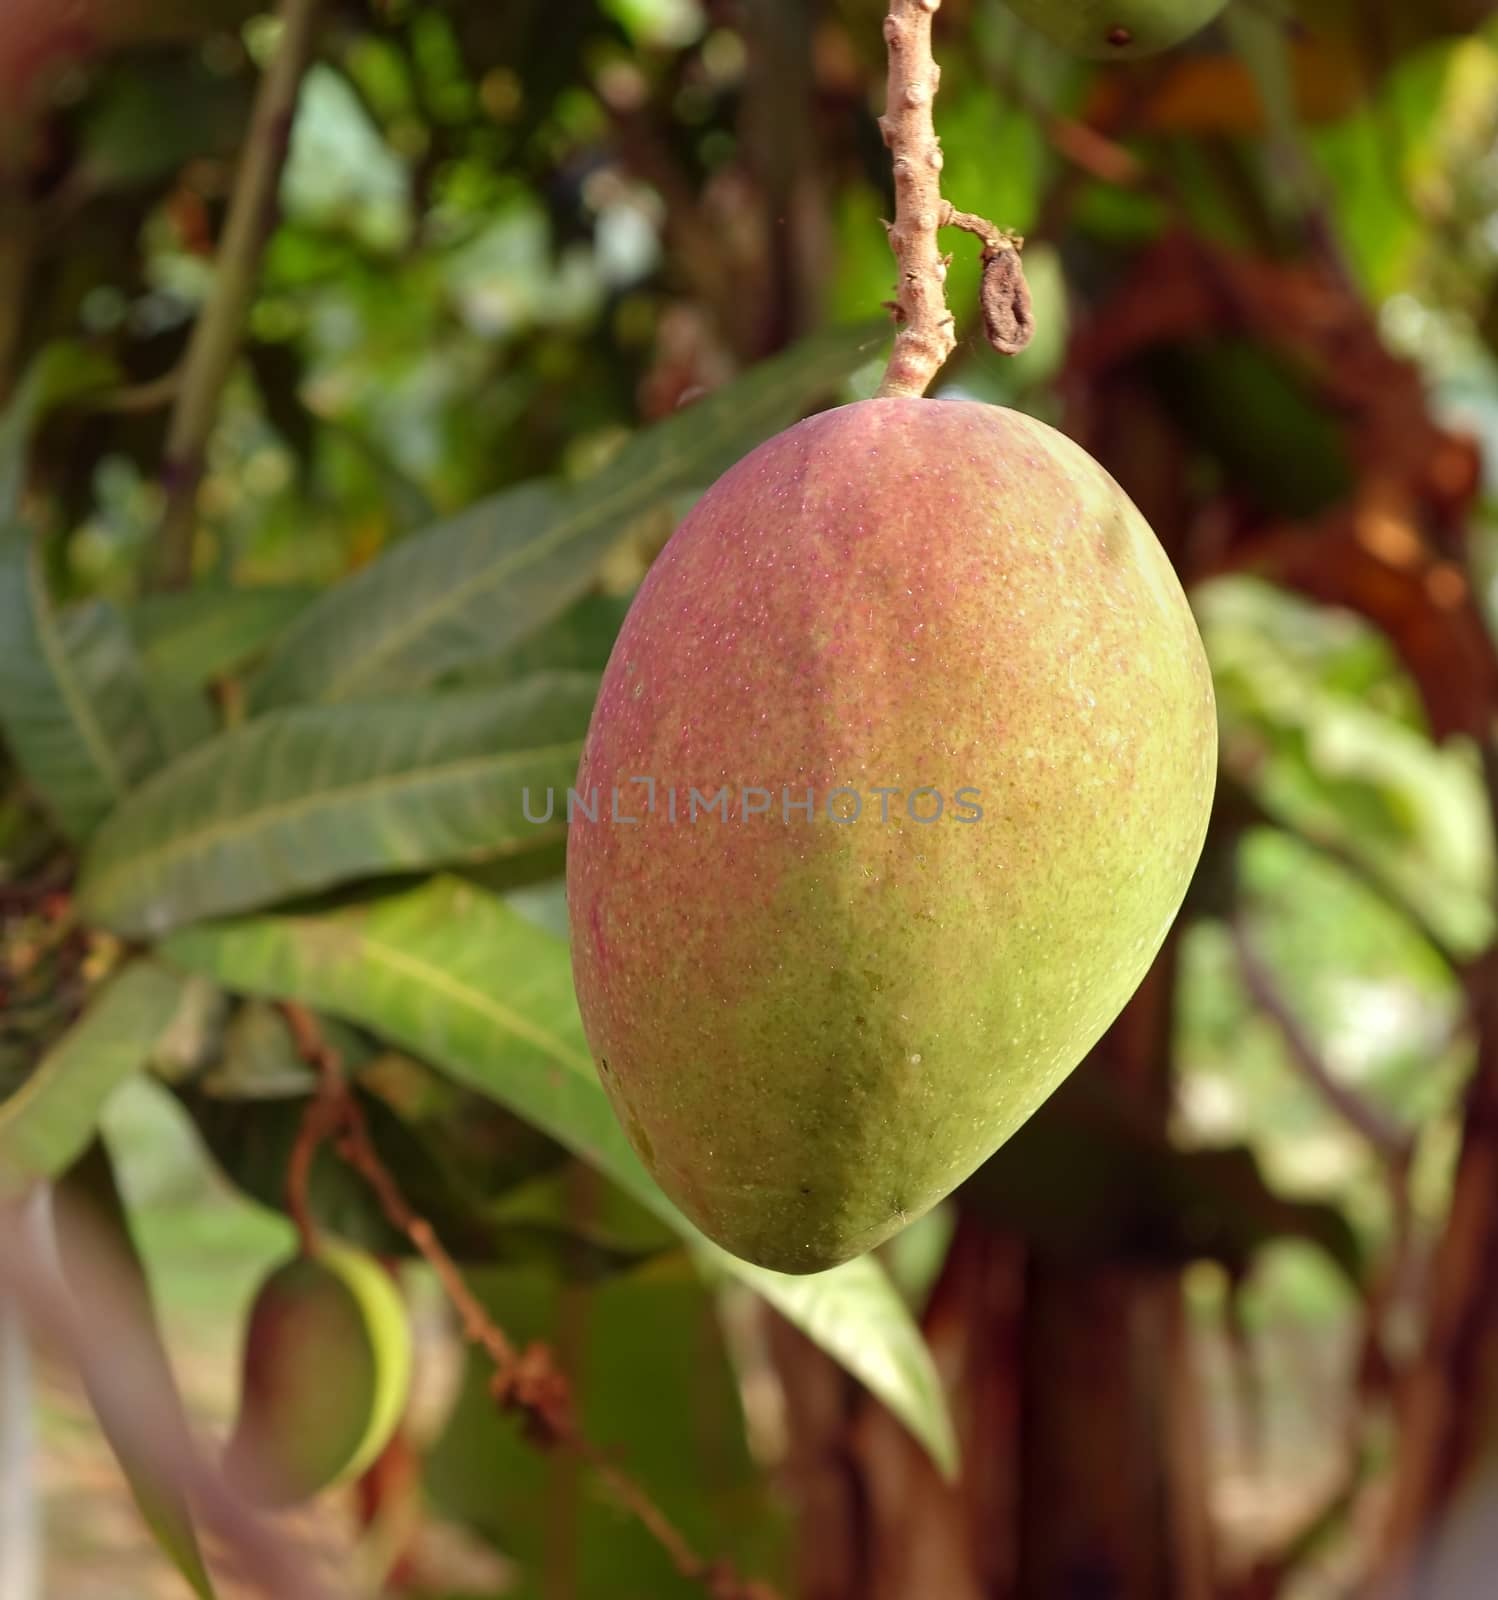 Large Mango Fruit on Tree by shiyali